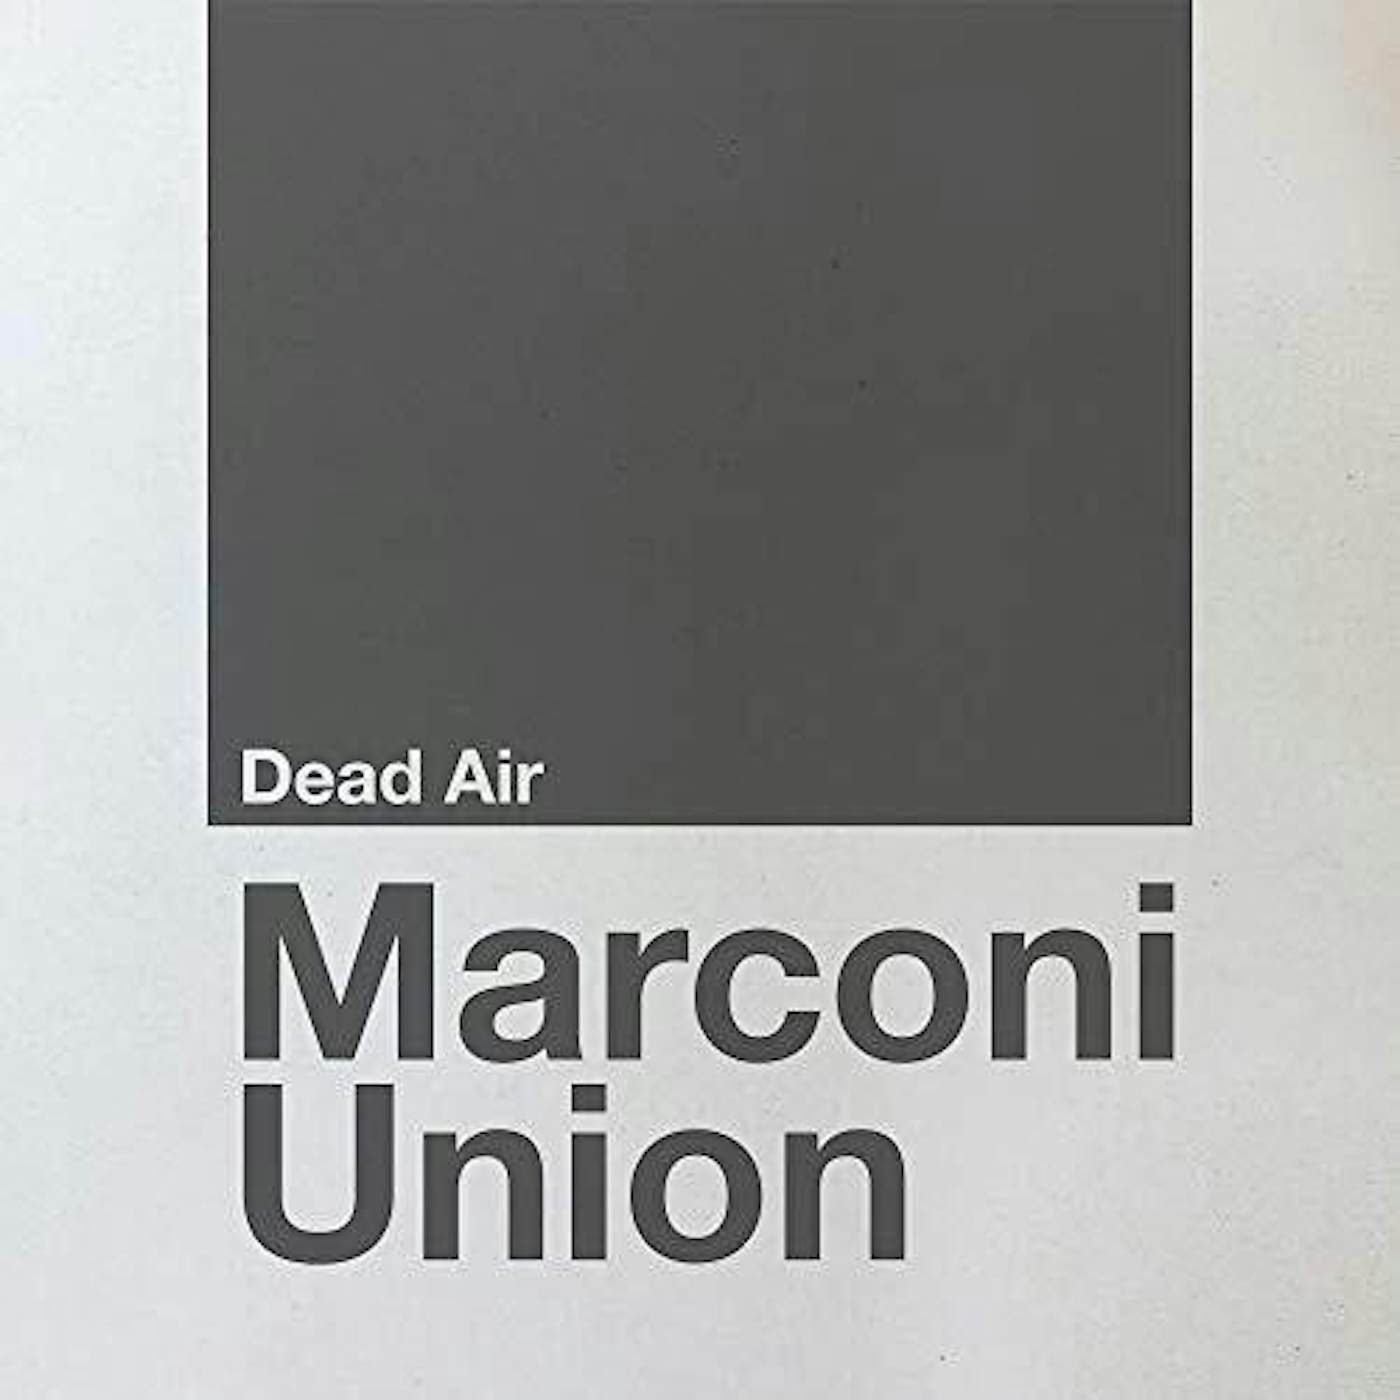 Marconi Union Dead Air Vinyl Record